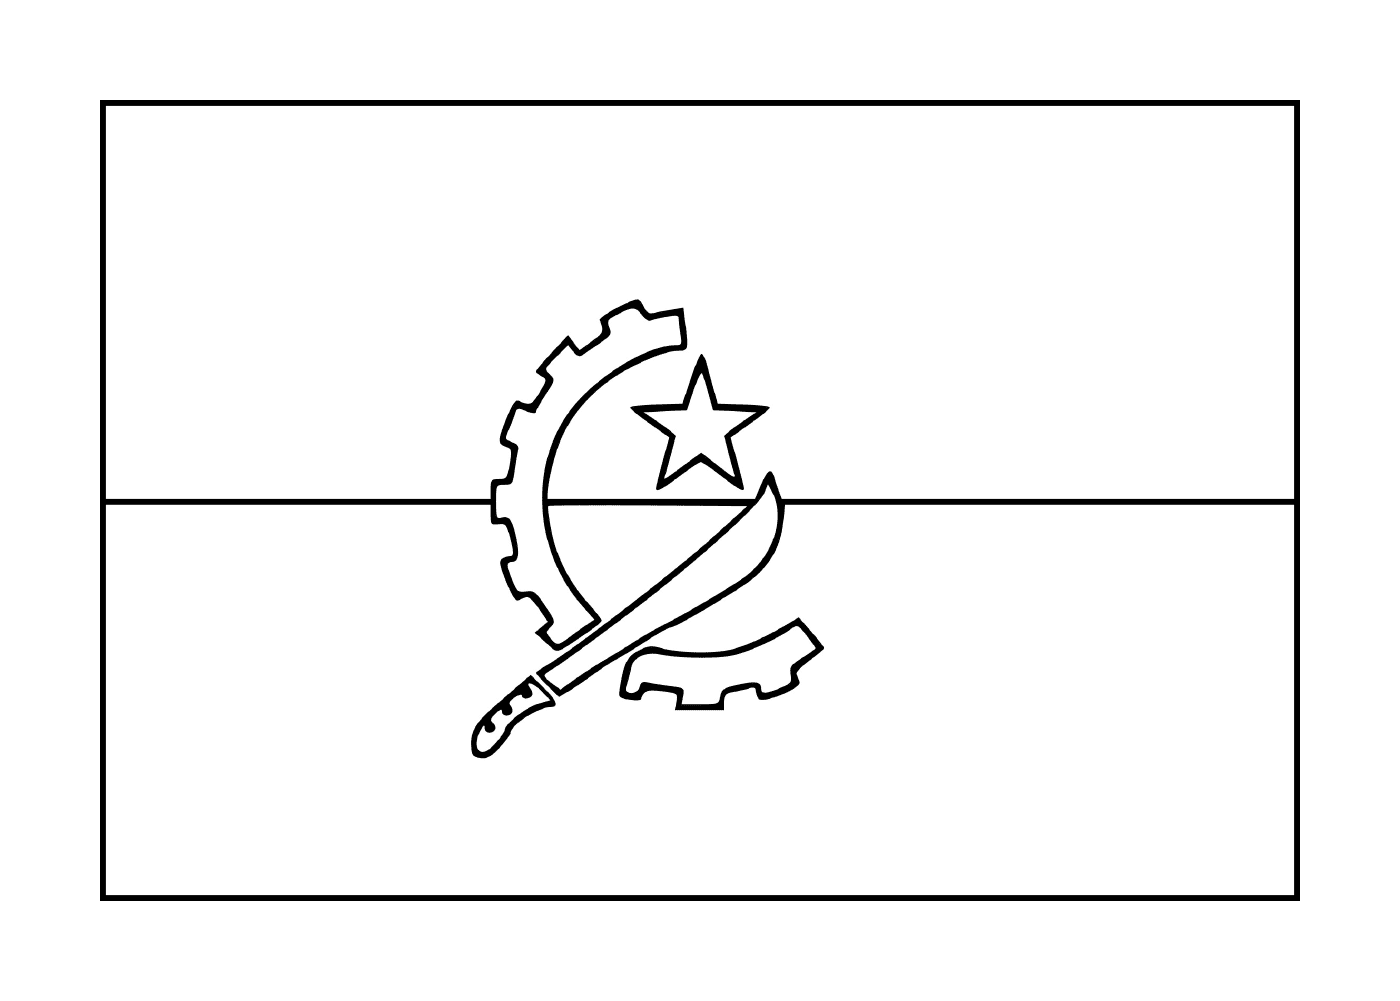  安哥拉国旗 